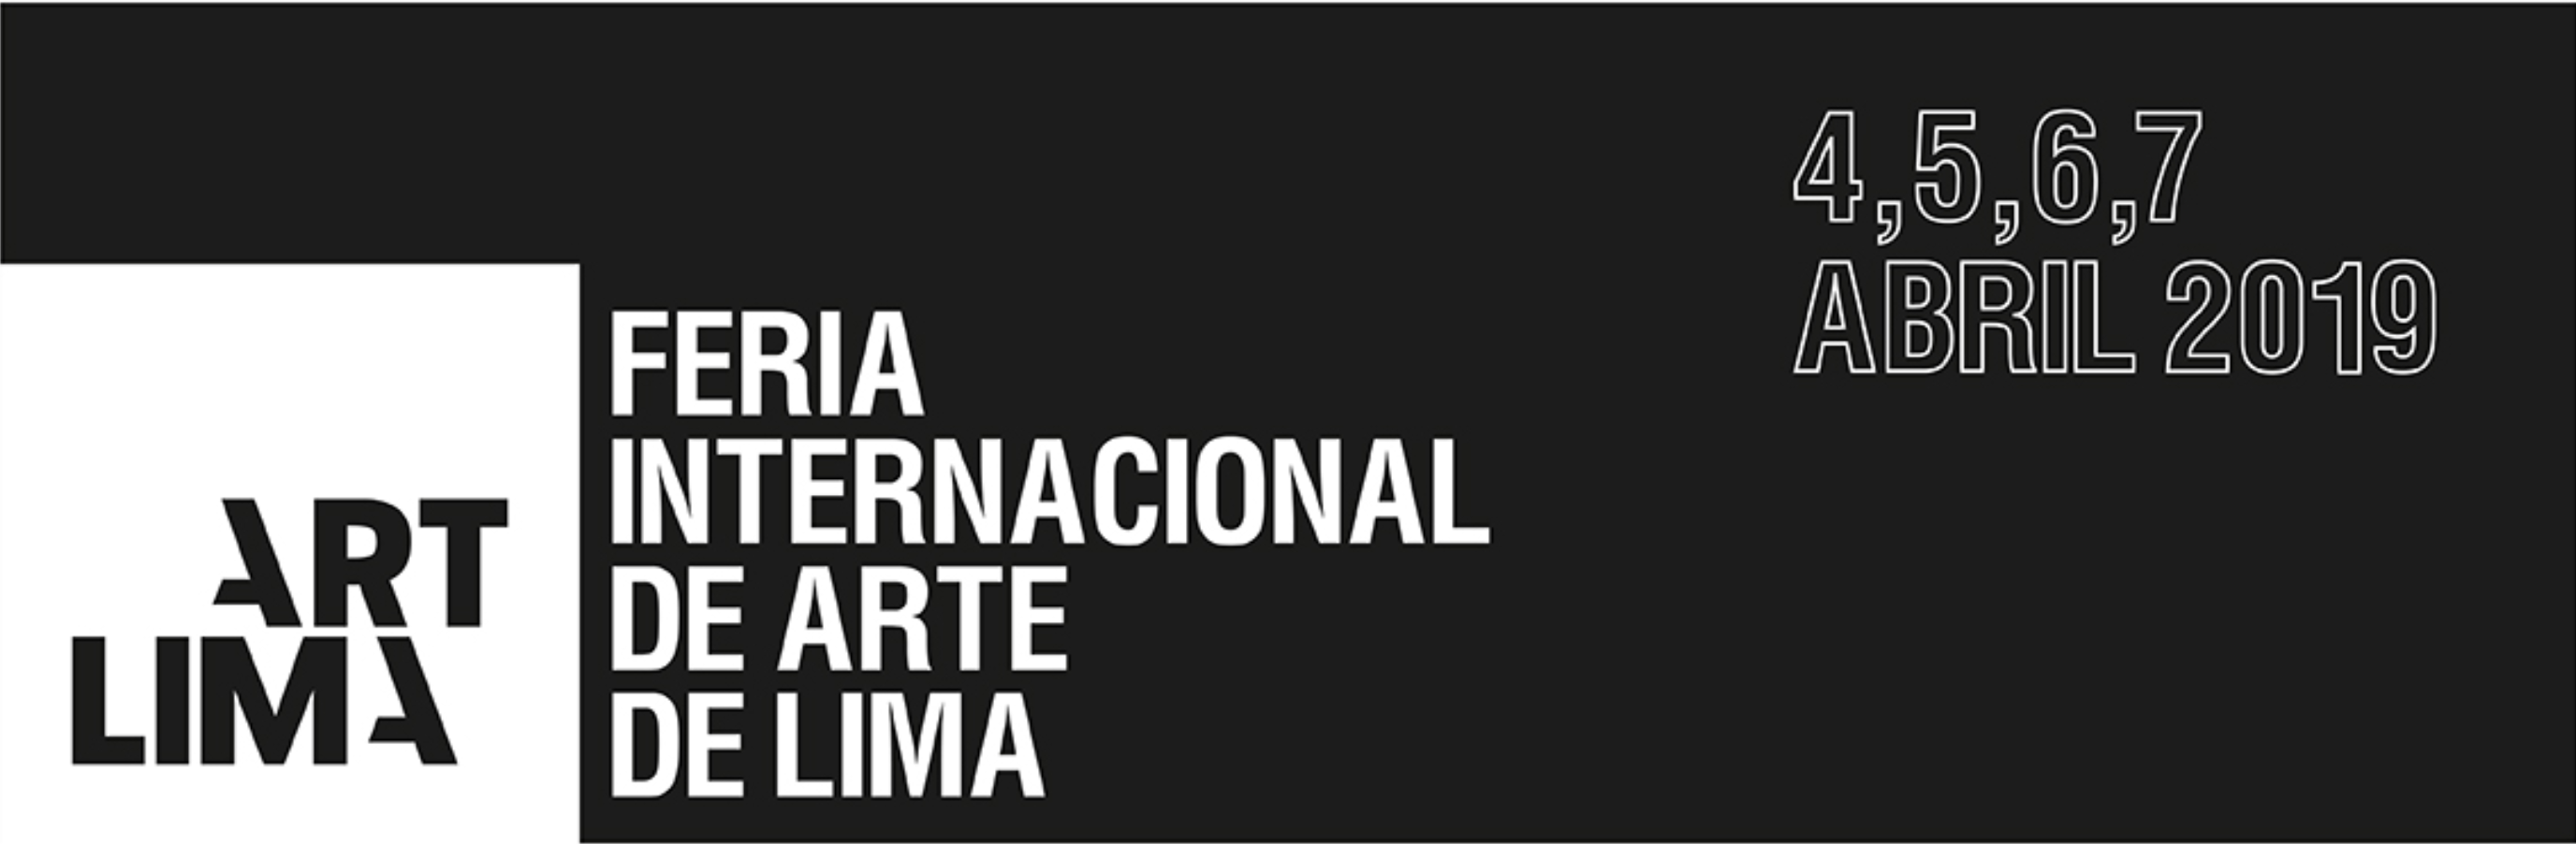 Participation: Art Lima 2019